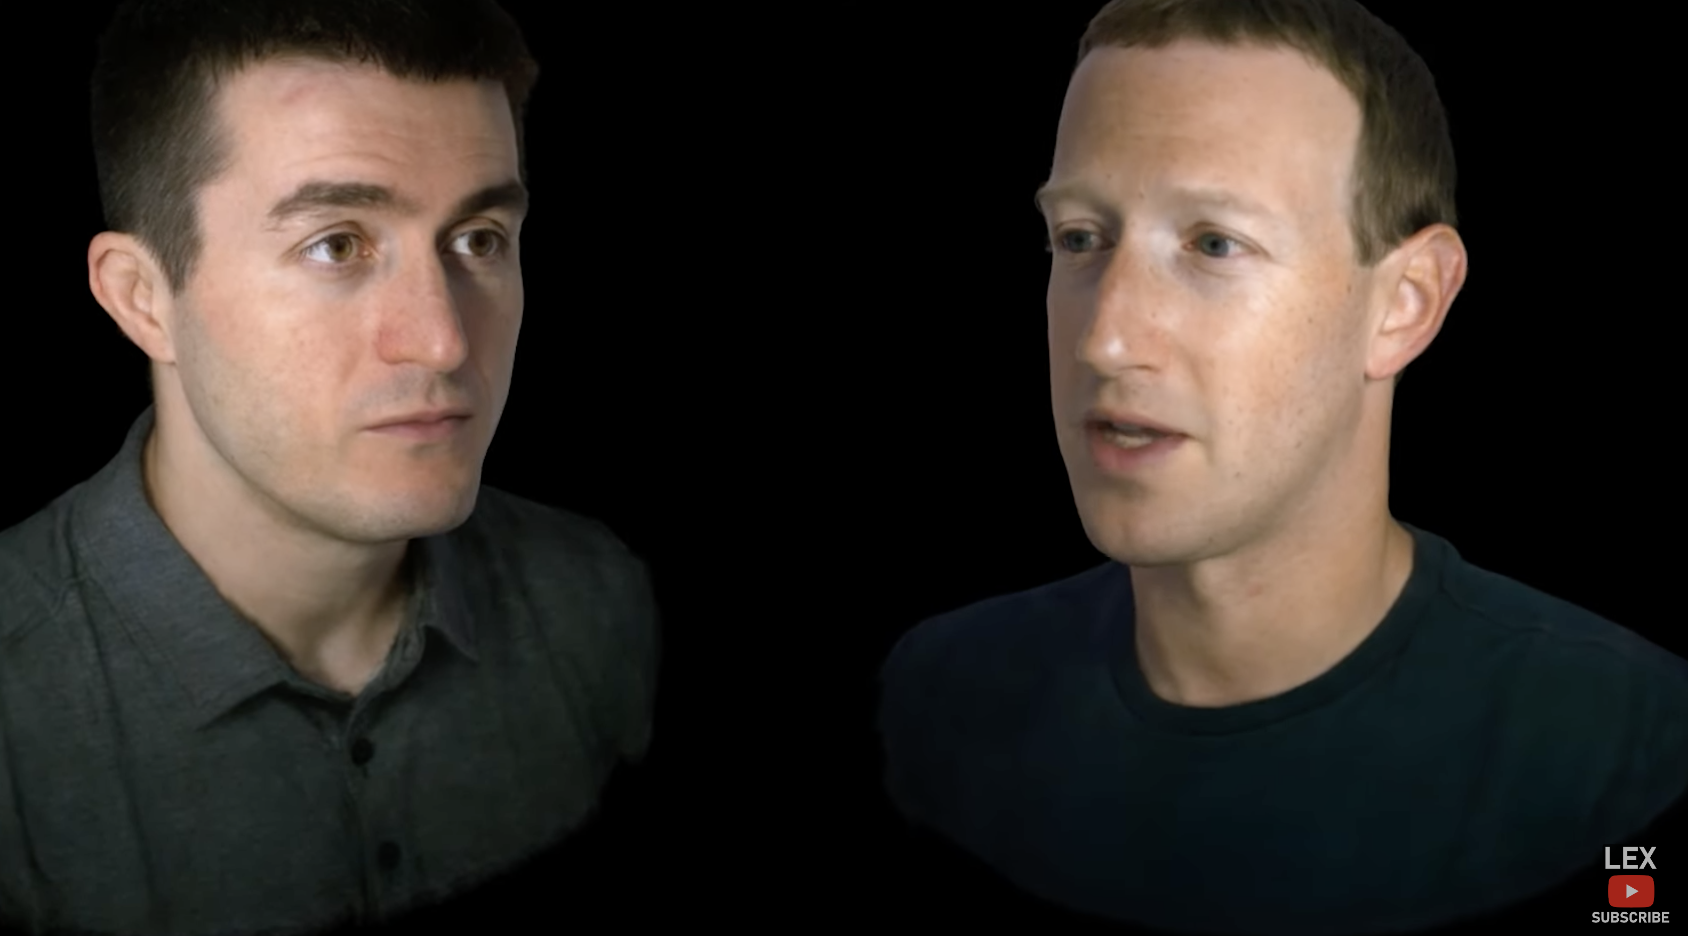 Watch Mark Zuckerberg And Lex Fridman Training Together 